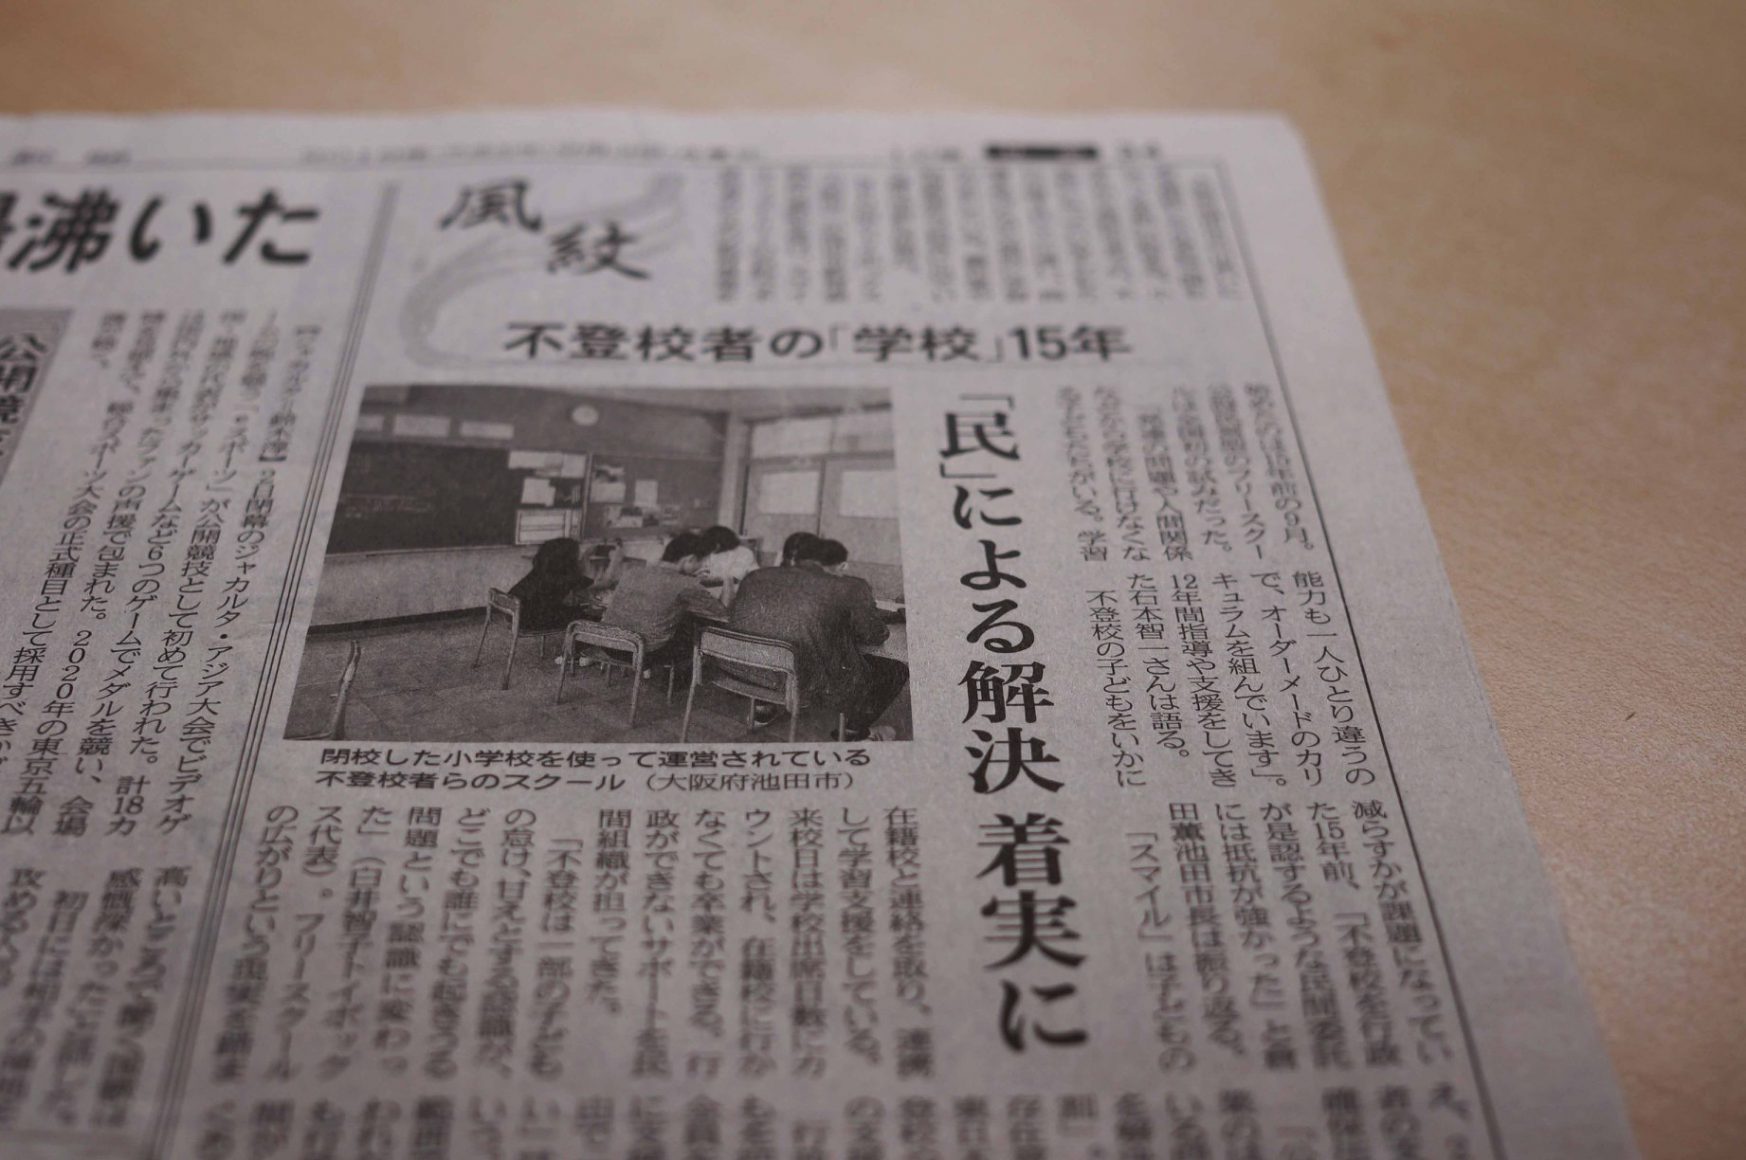 日本経済新聞コラム「風紋」にスマイルファクトリーを取り上げていただきました